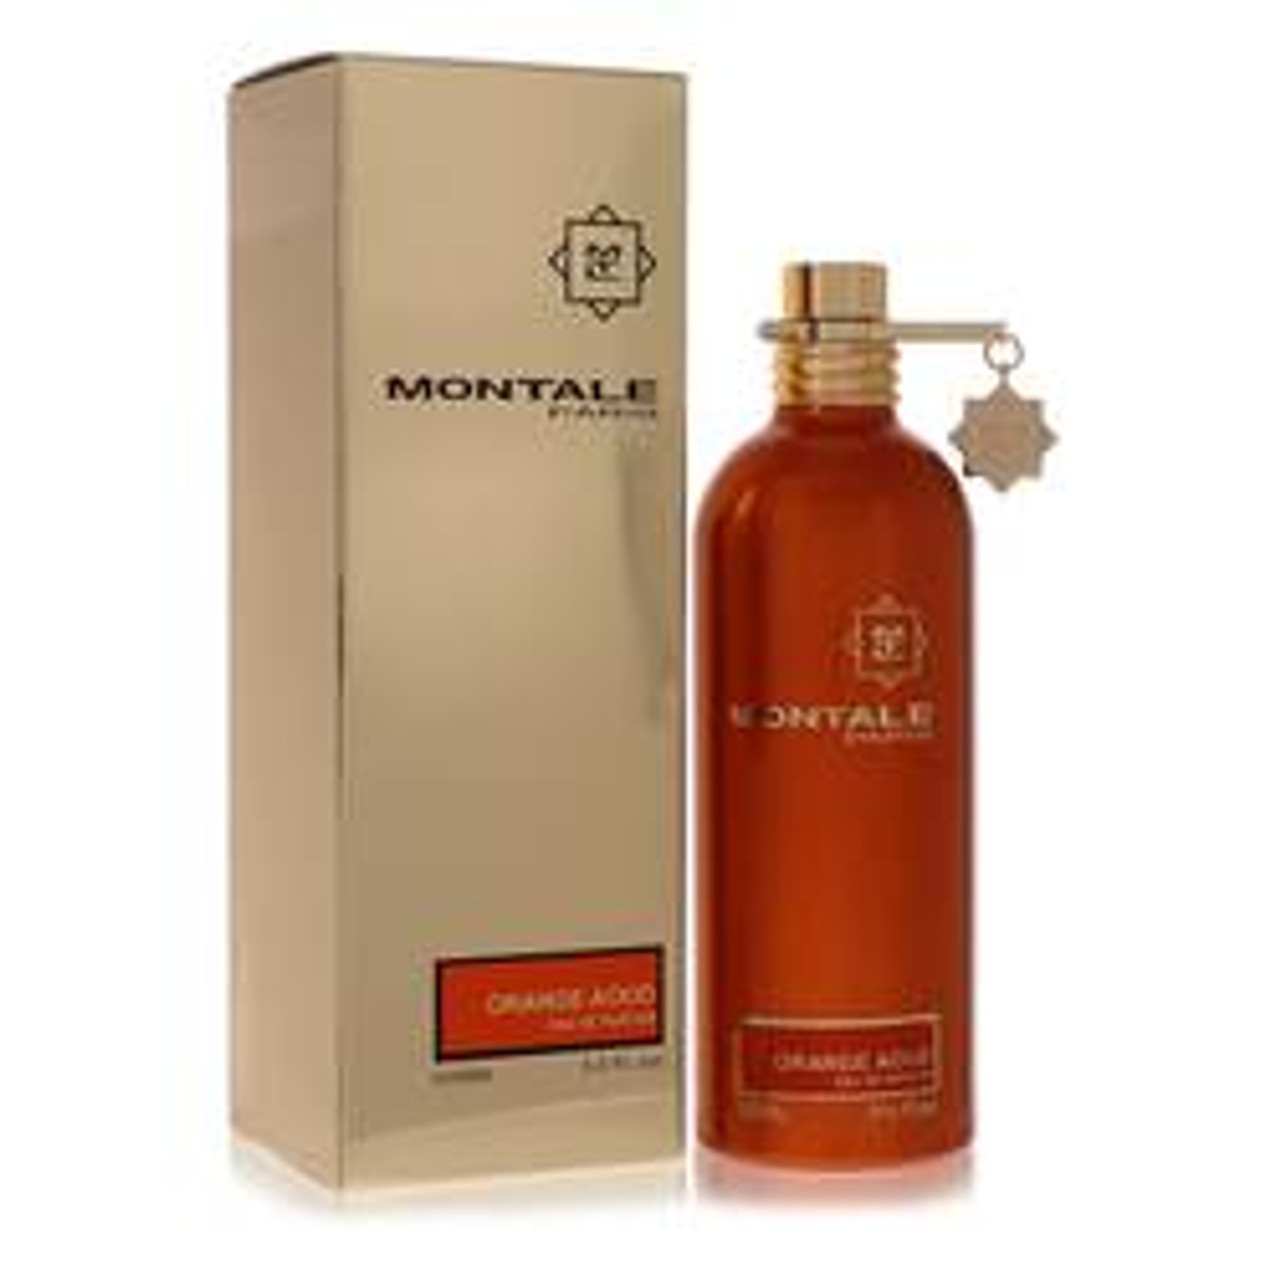 Montale Orange Aoud Perfume By Montale Eau De Parfum Spray (Unisex) 3.4 oz for Women - *Pre-Order